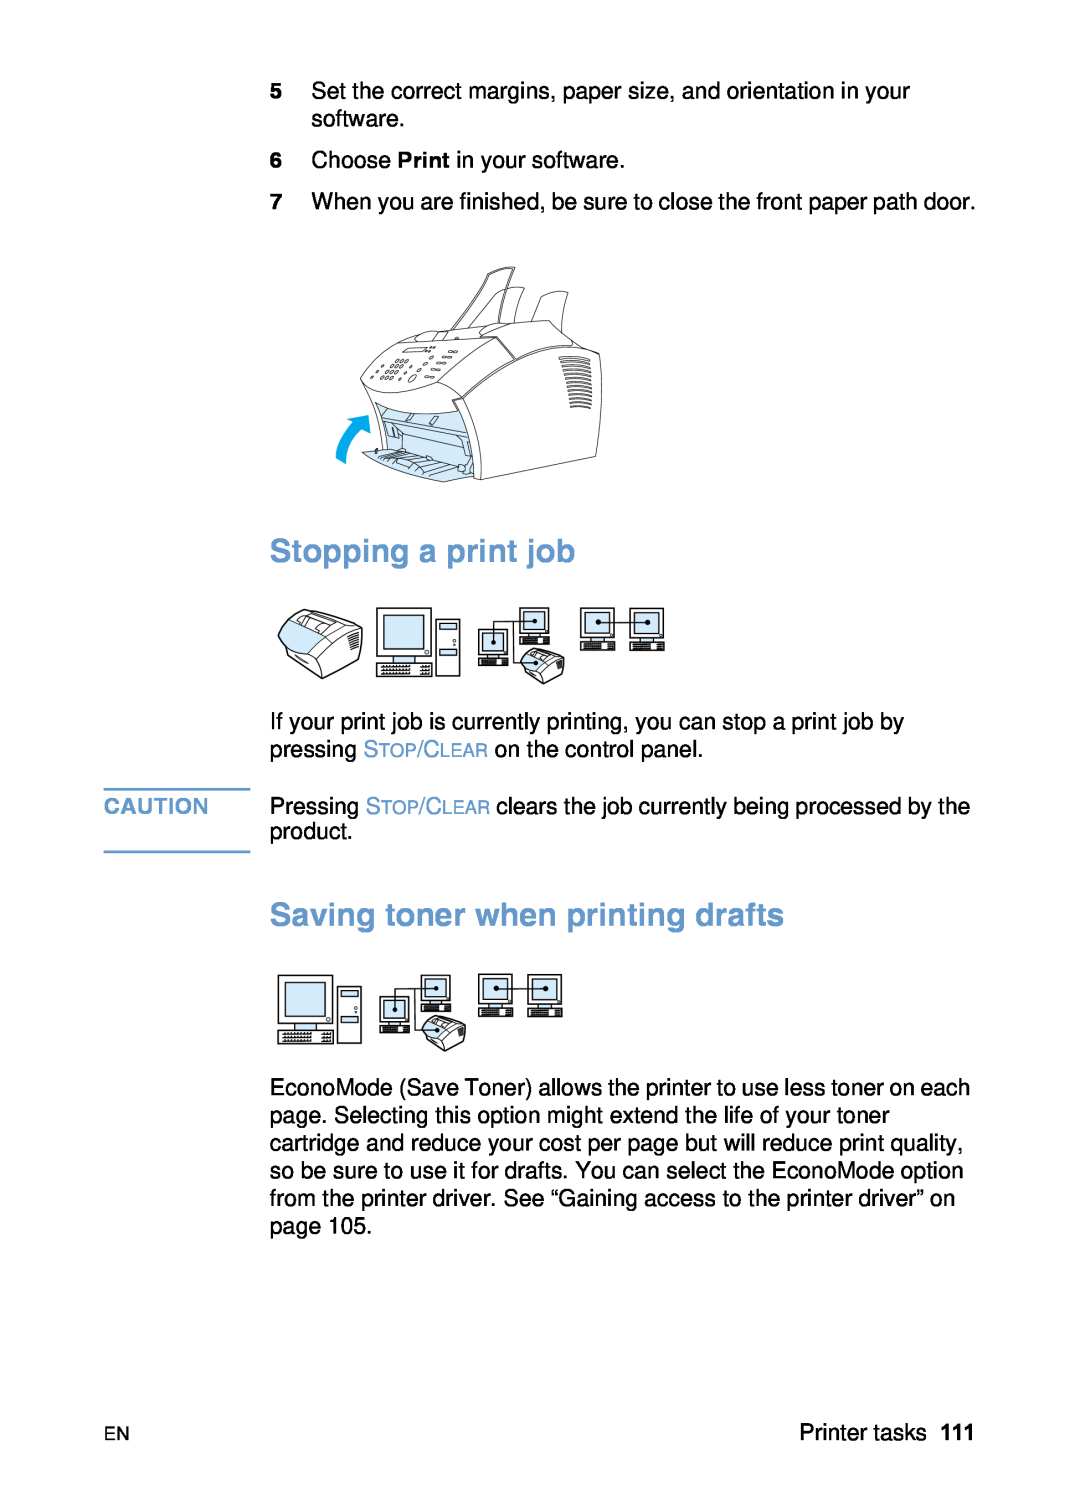 HP 3200 manual Stopping a print job, Saving toner when printing drafts 